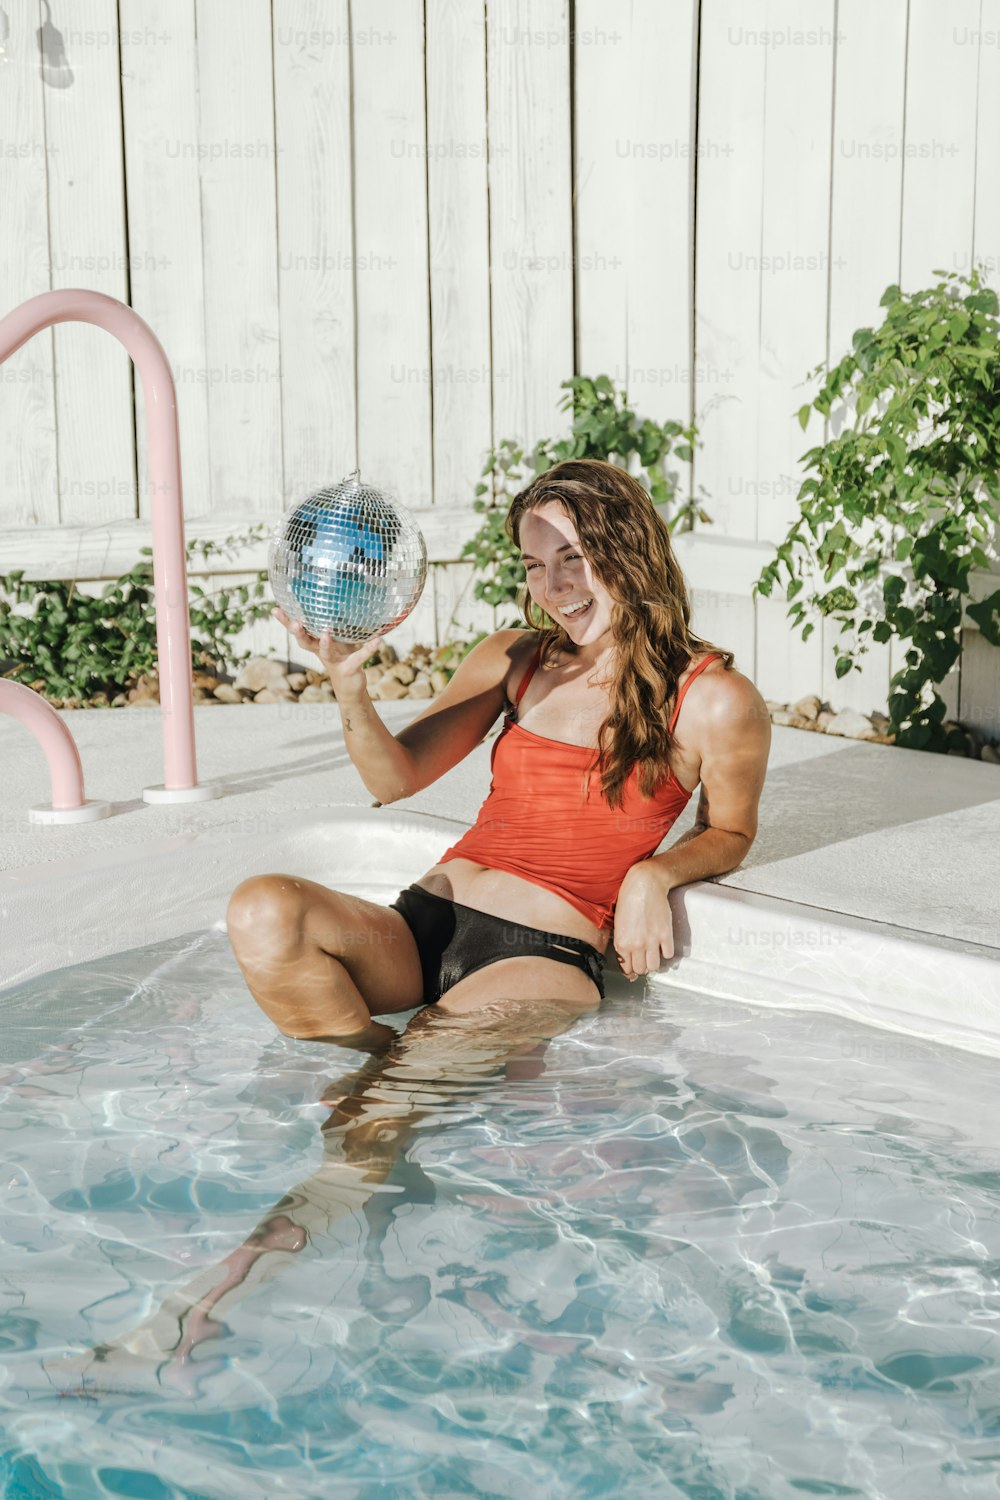 Eine Frau, die in einem Pool sitzt und eine Discokugel hält